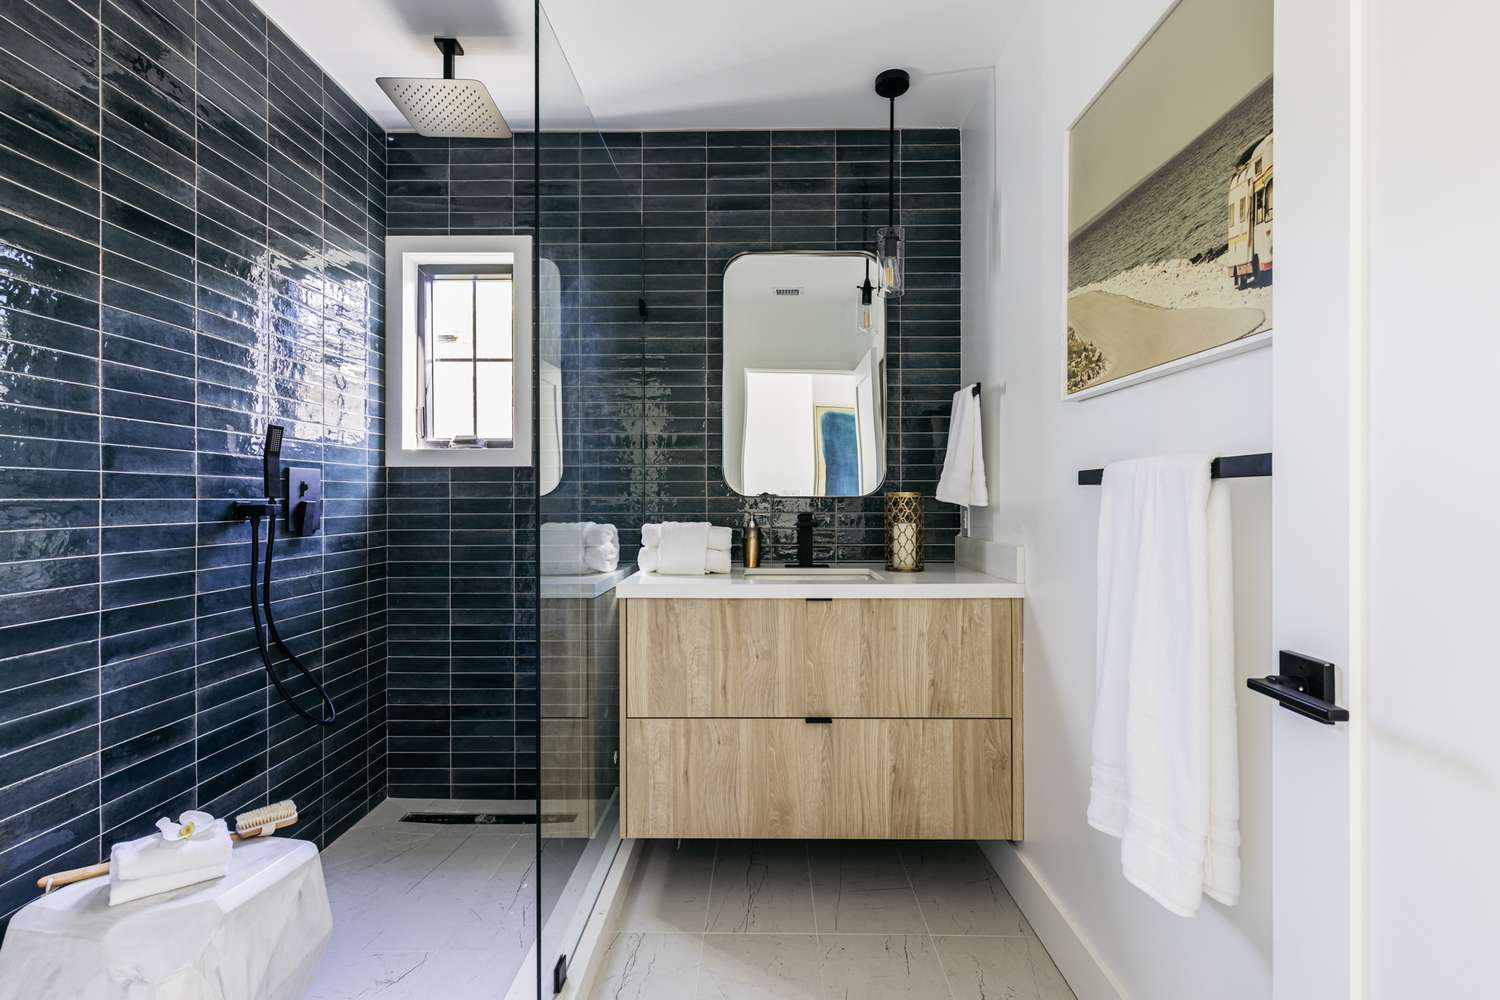 Puerta de mampara de baño de cristal junto a tocador revestido de madera y blanco en baño alicatado en azul oscuro